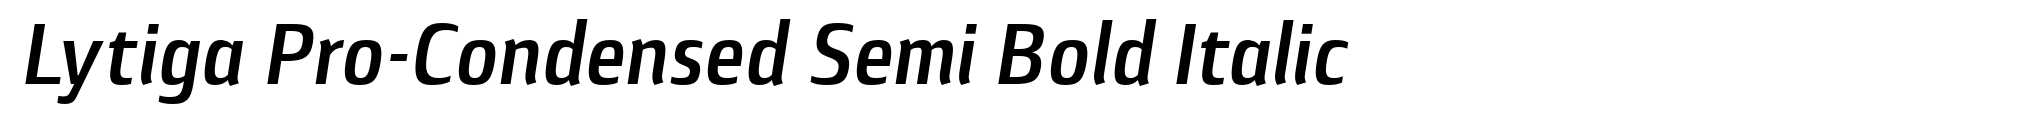 Lytiga Pro-Condensed Semi Bold Italic image